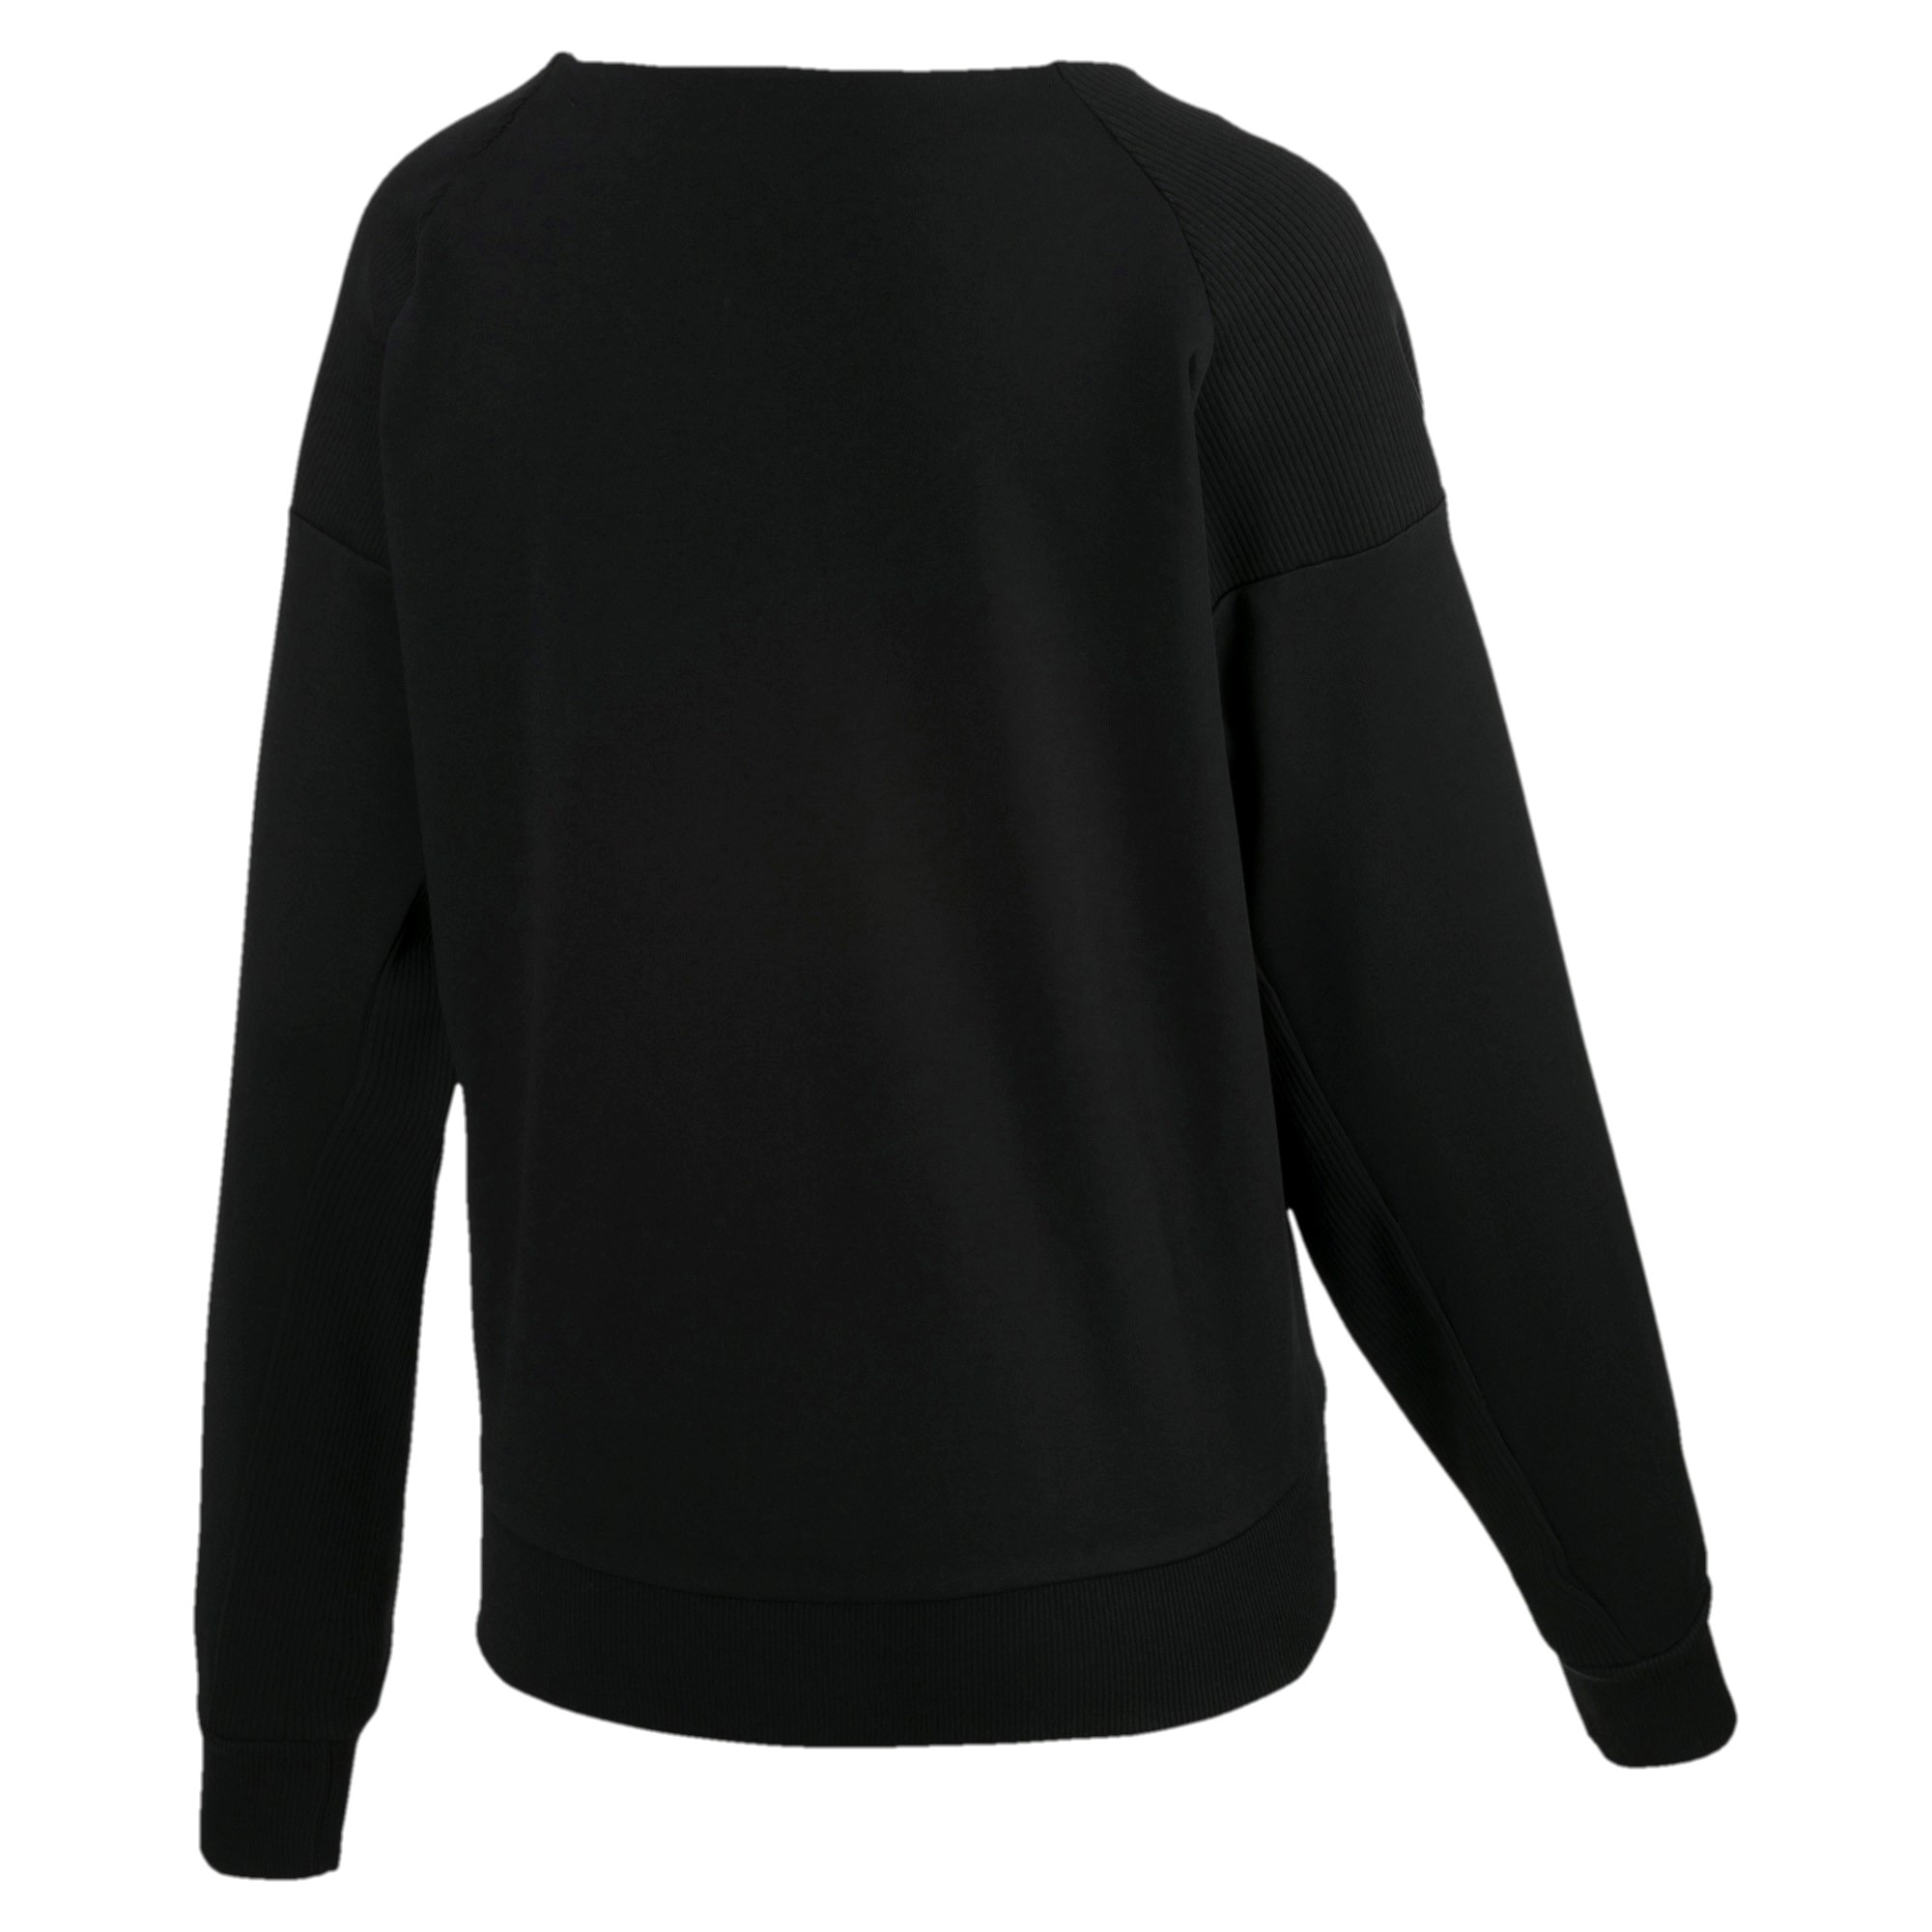 PUMA Fusion Crew Sweat Damen Sweatshirt schwarz 854340